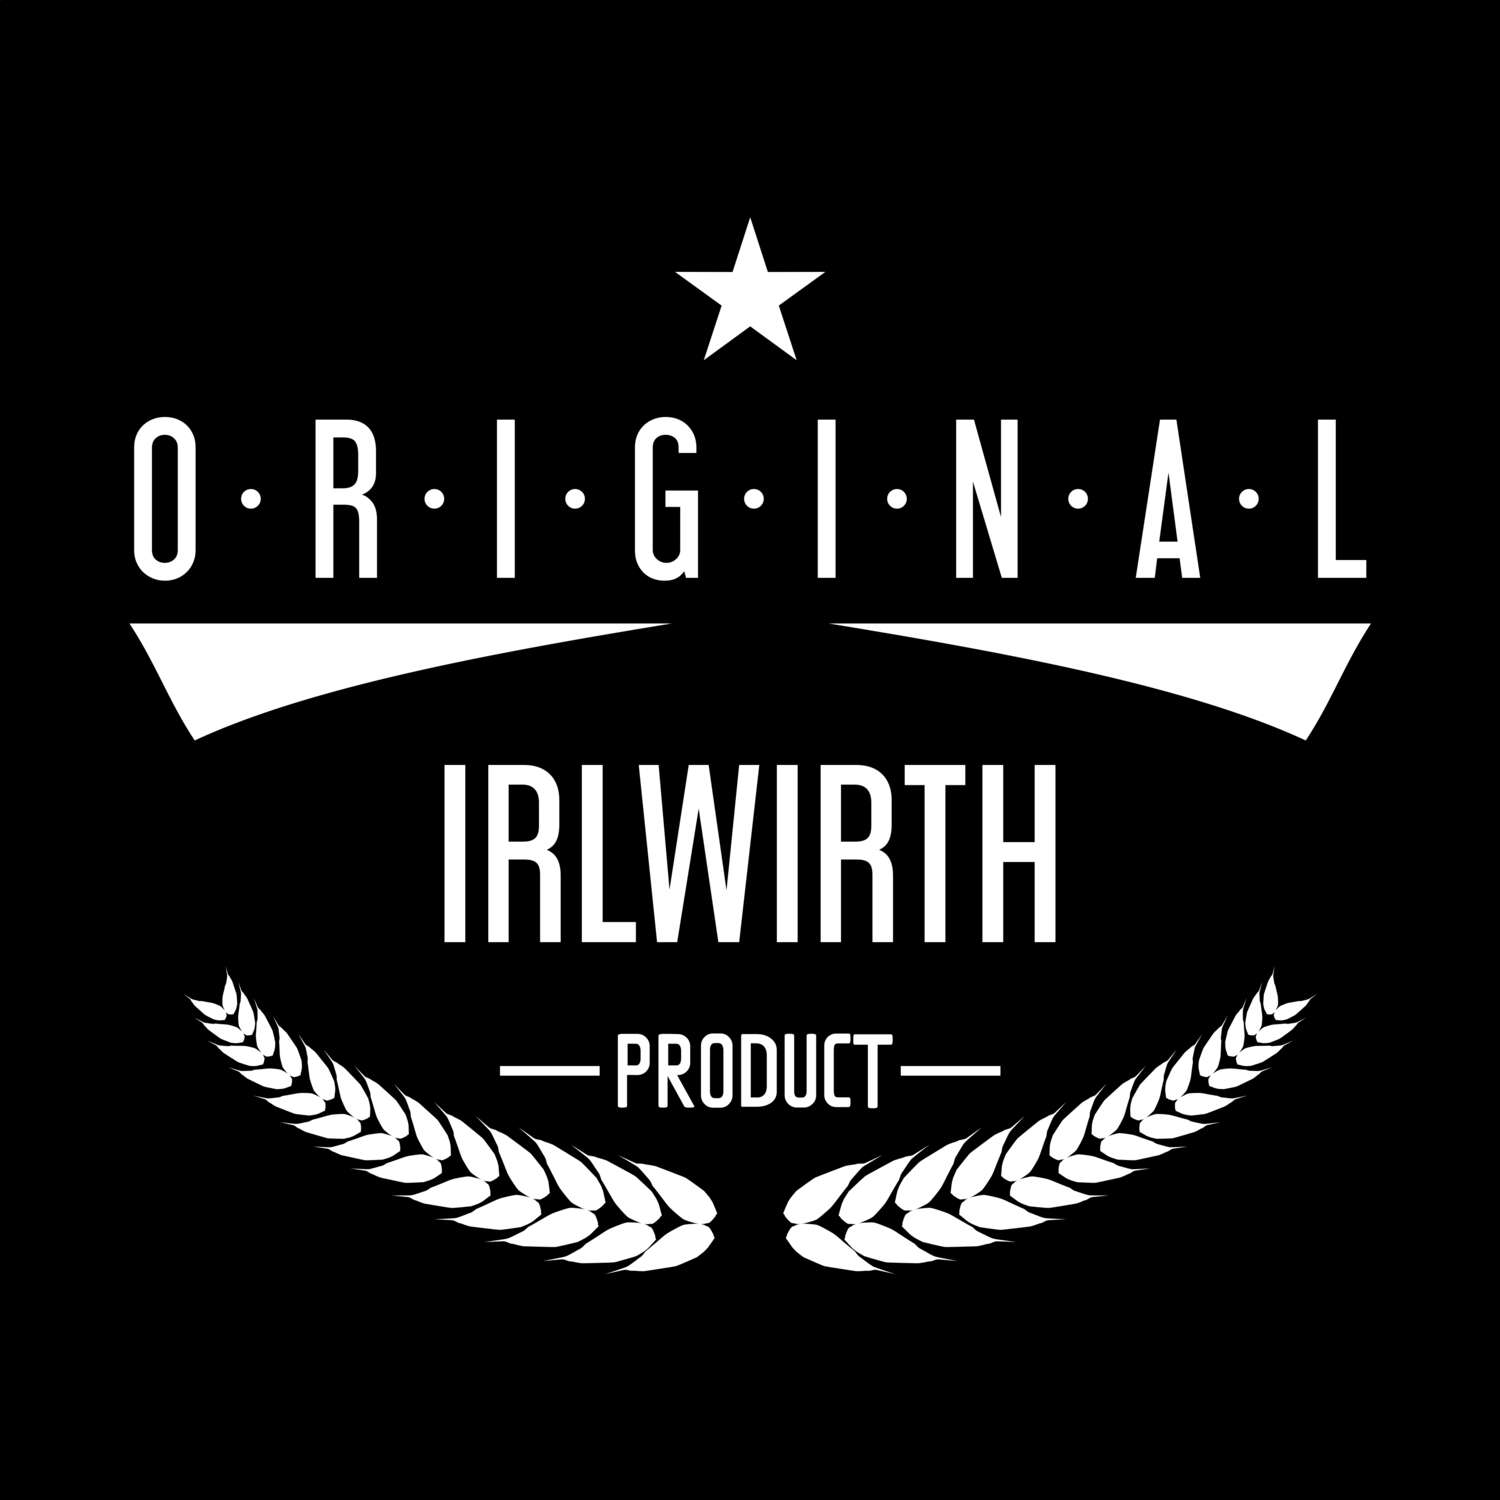 Irlwirth T-Shirt »Original Product«